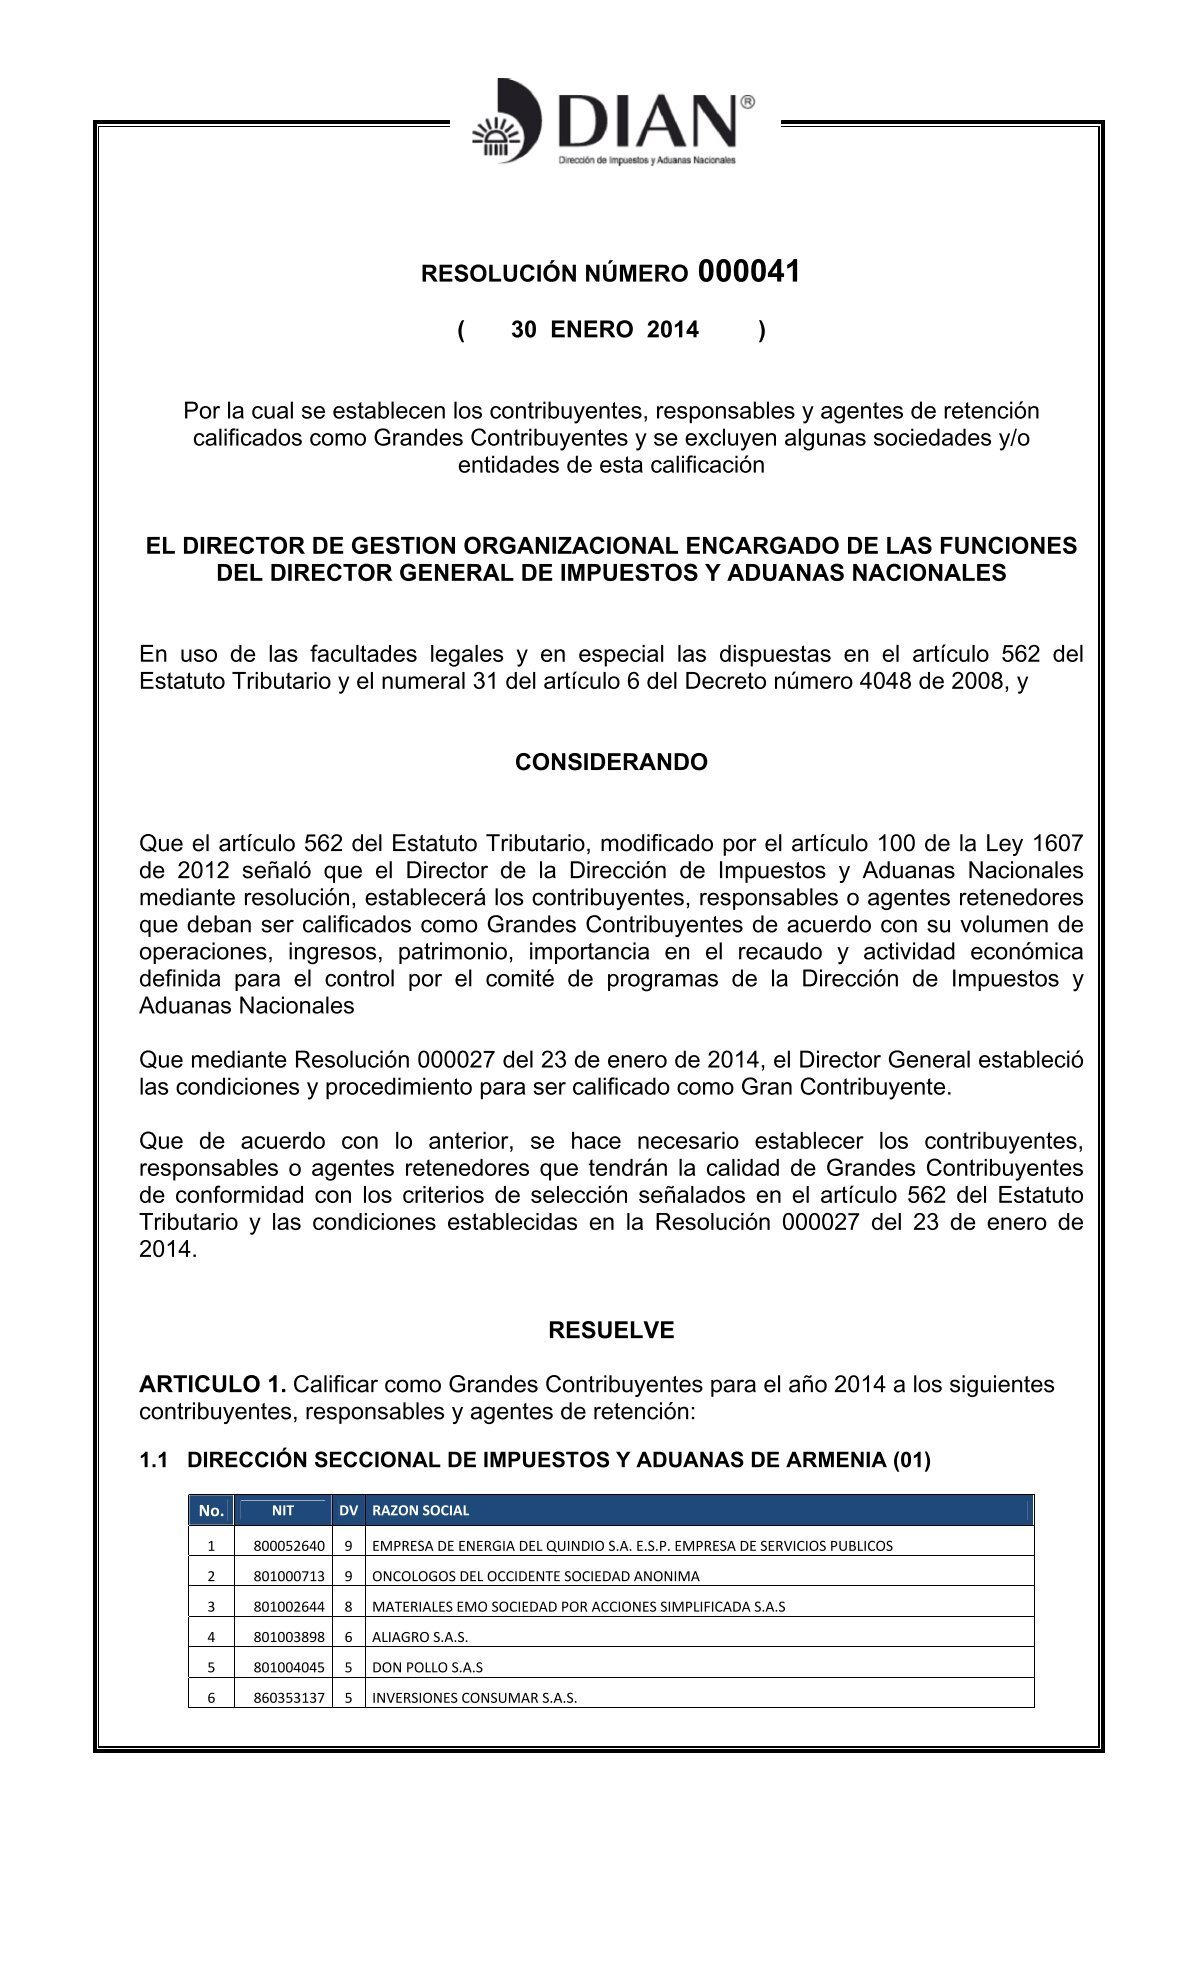 LOGYTEC  Venta de Equipos de Instrumentacion y Herramientas para el Campo  Eléctrico, Industrial, Minero y Civil.